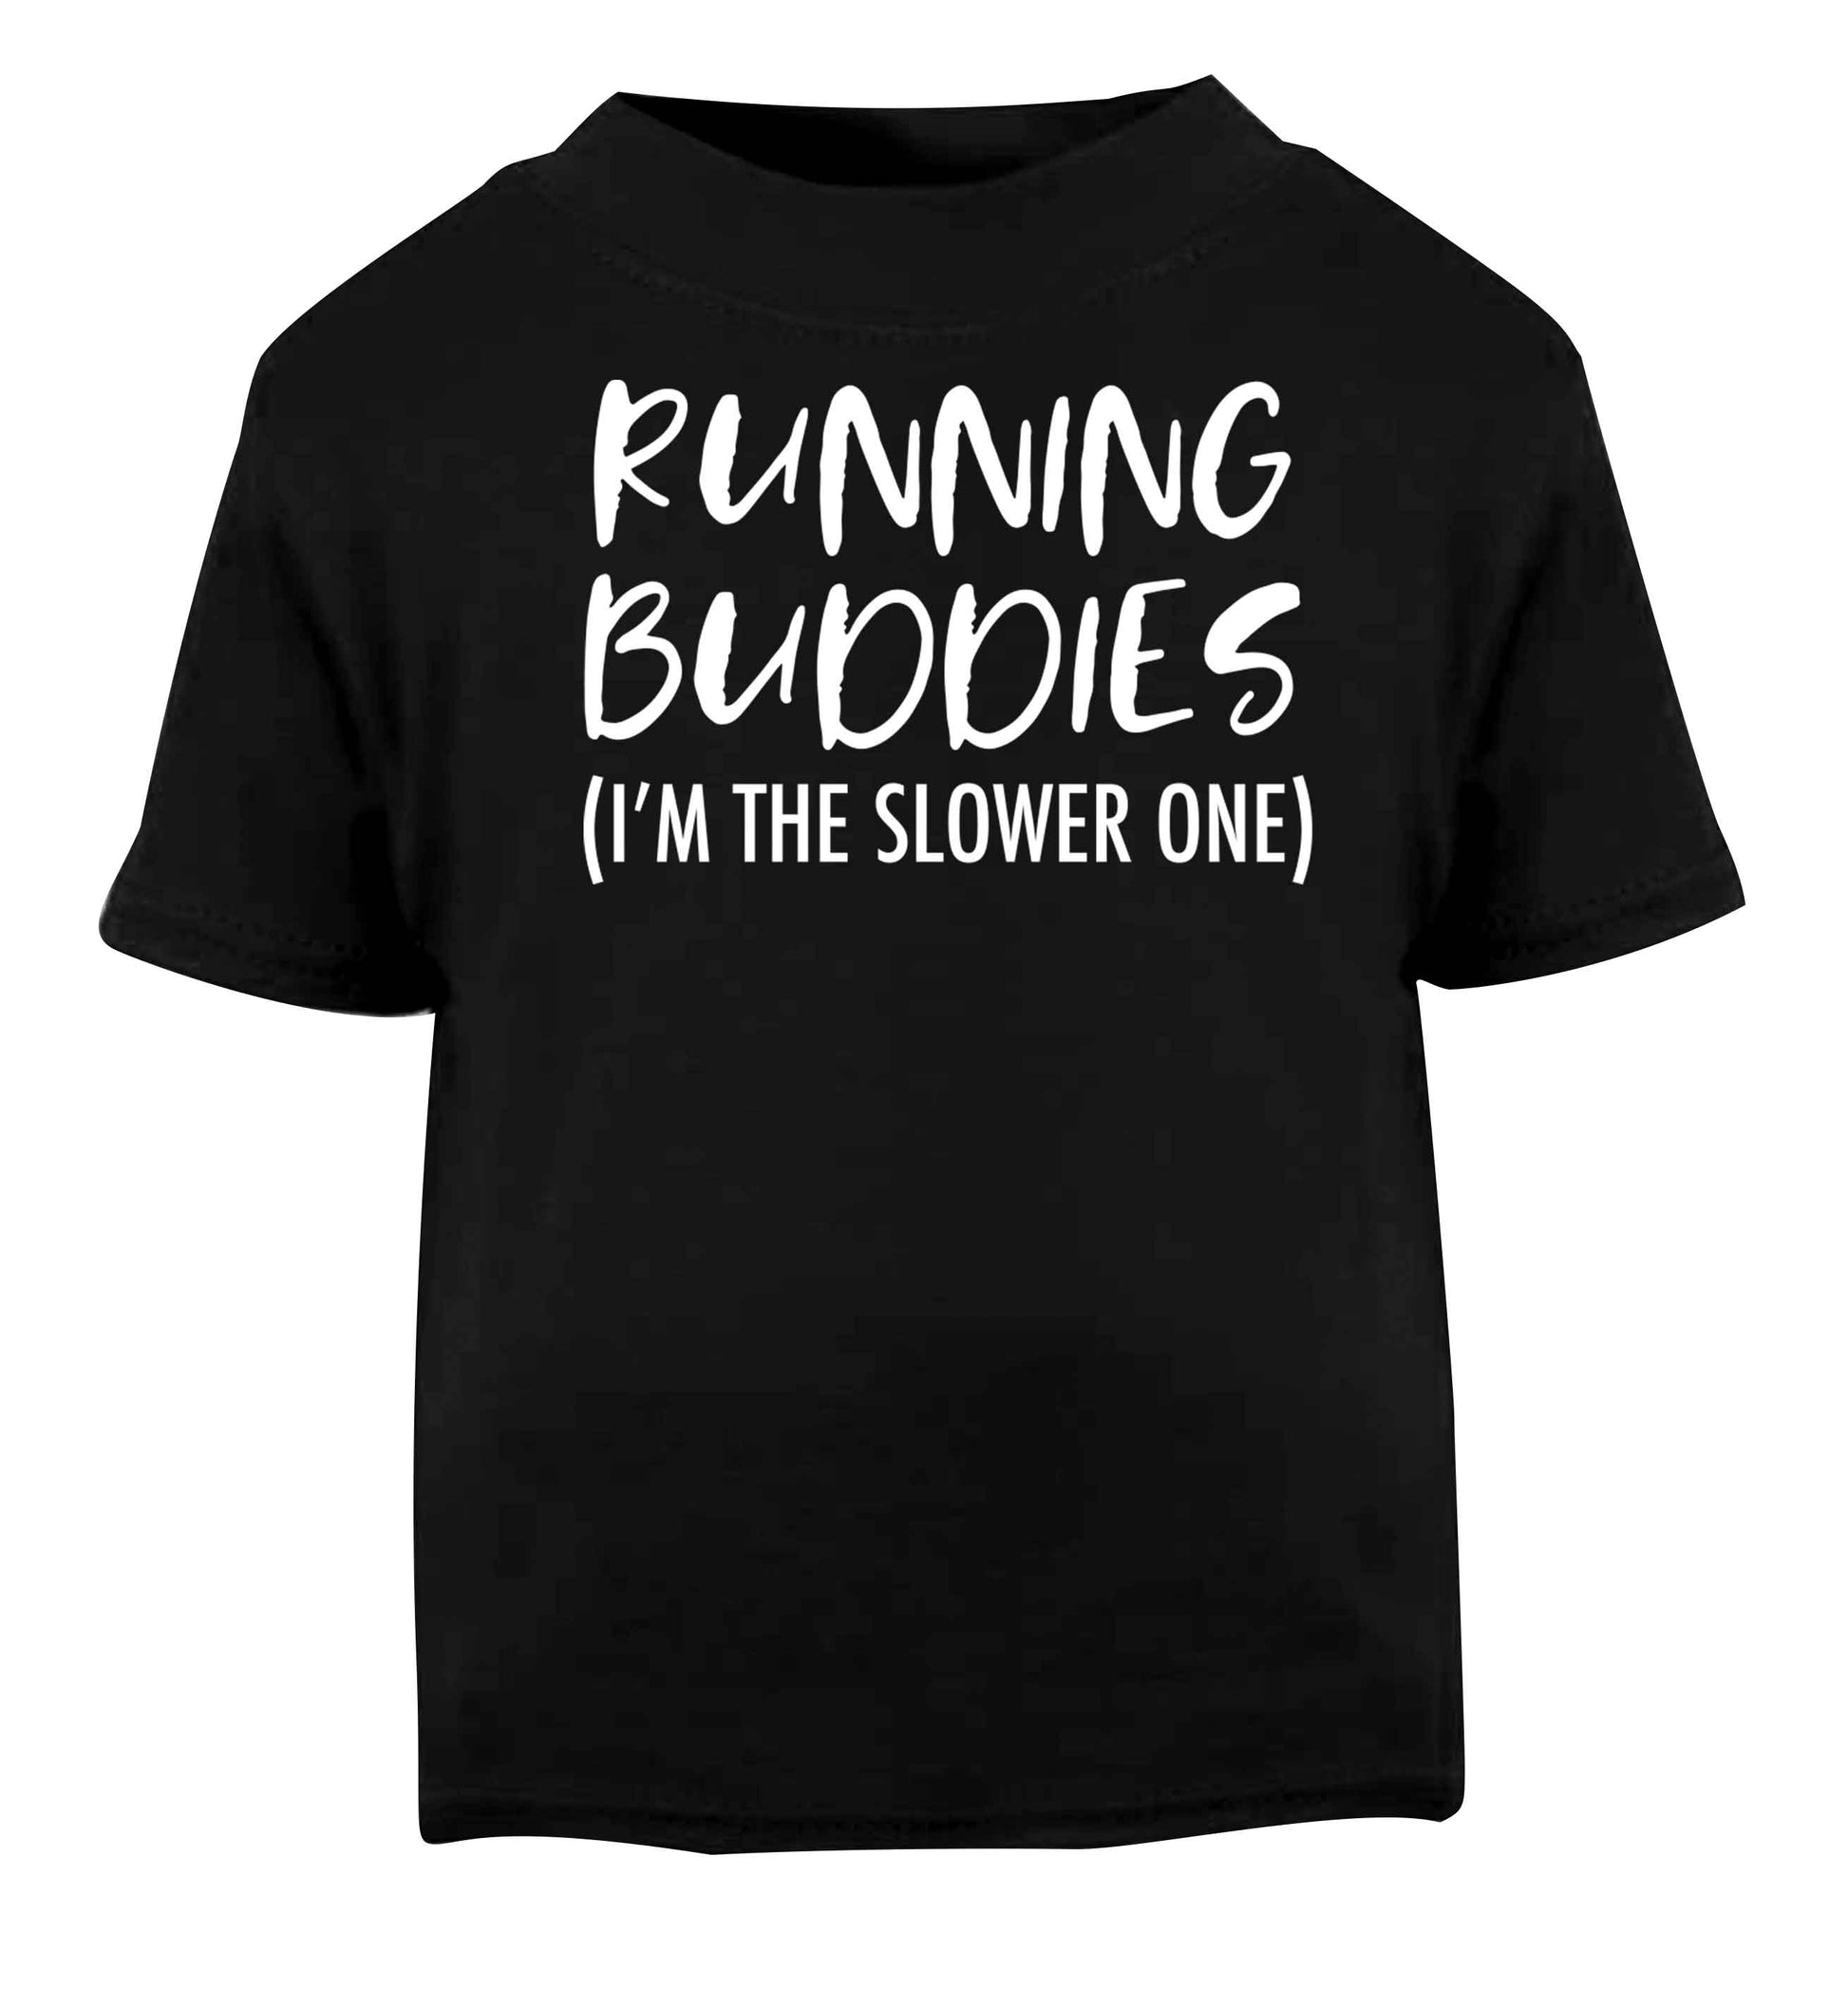 Running buddies (I'm the slower one) Black baby toddler Tshirt 2 years